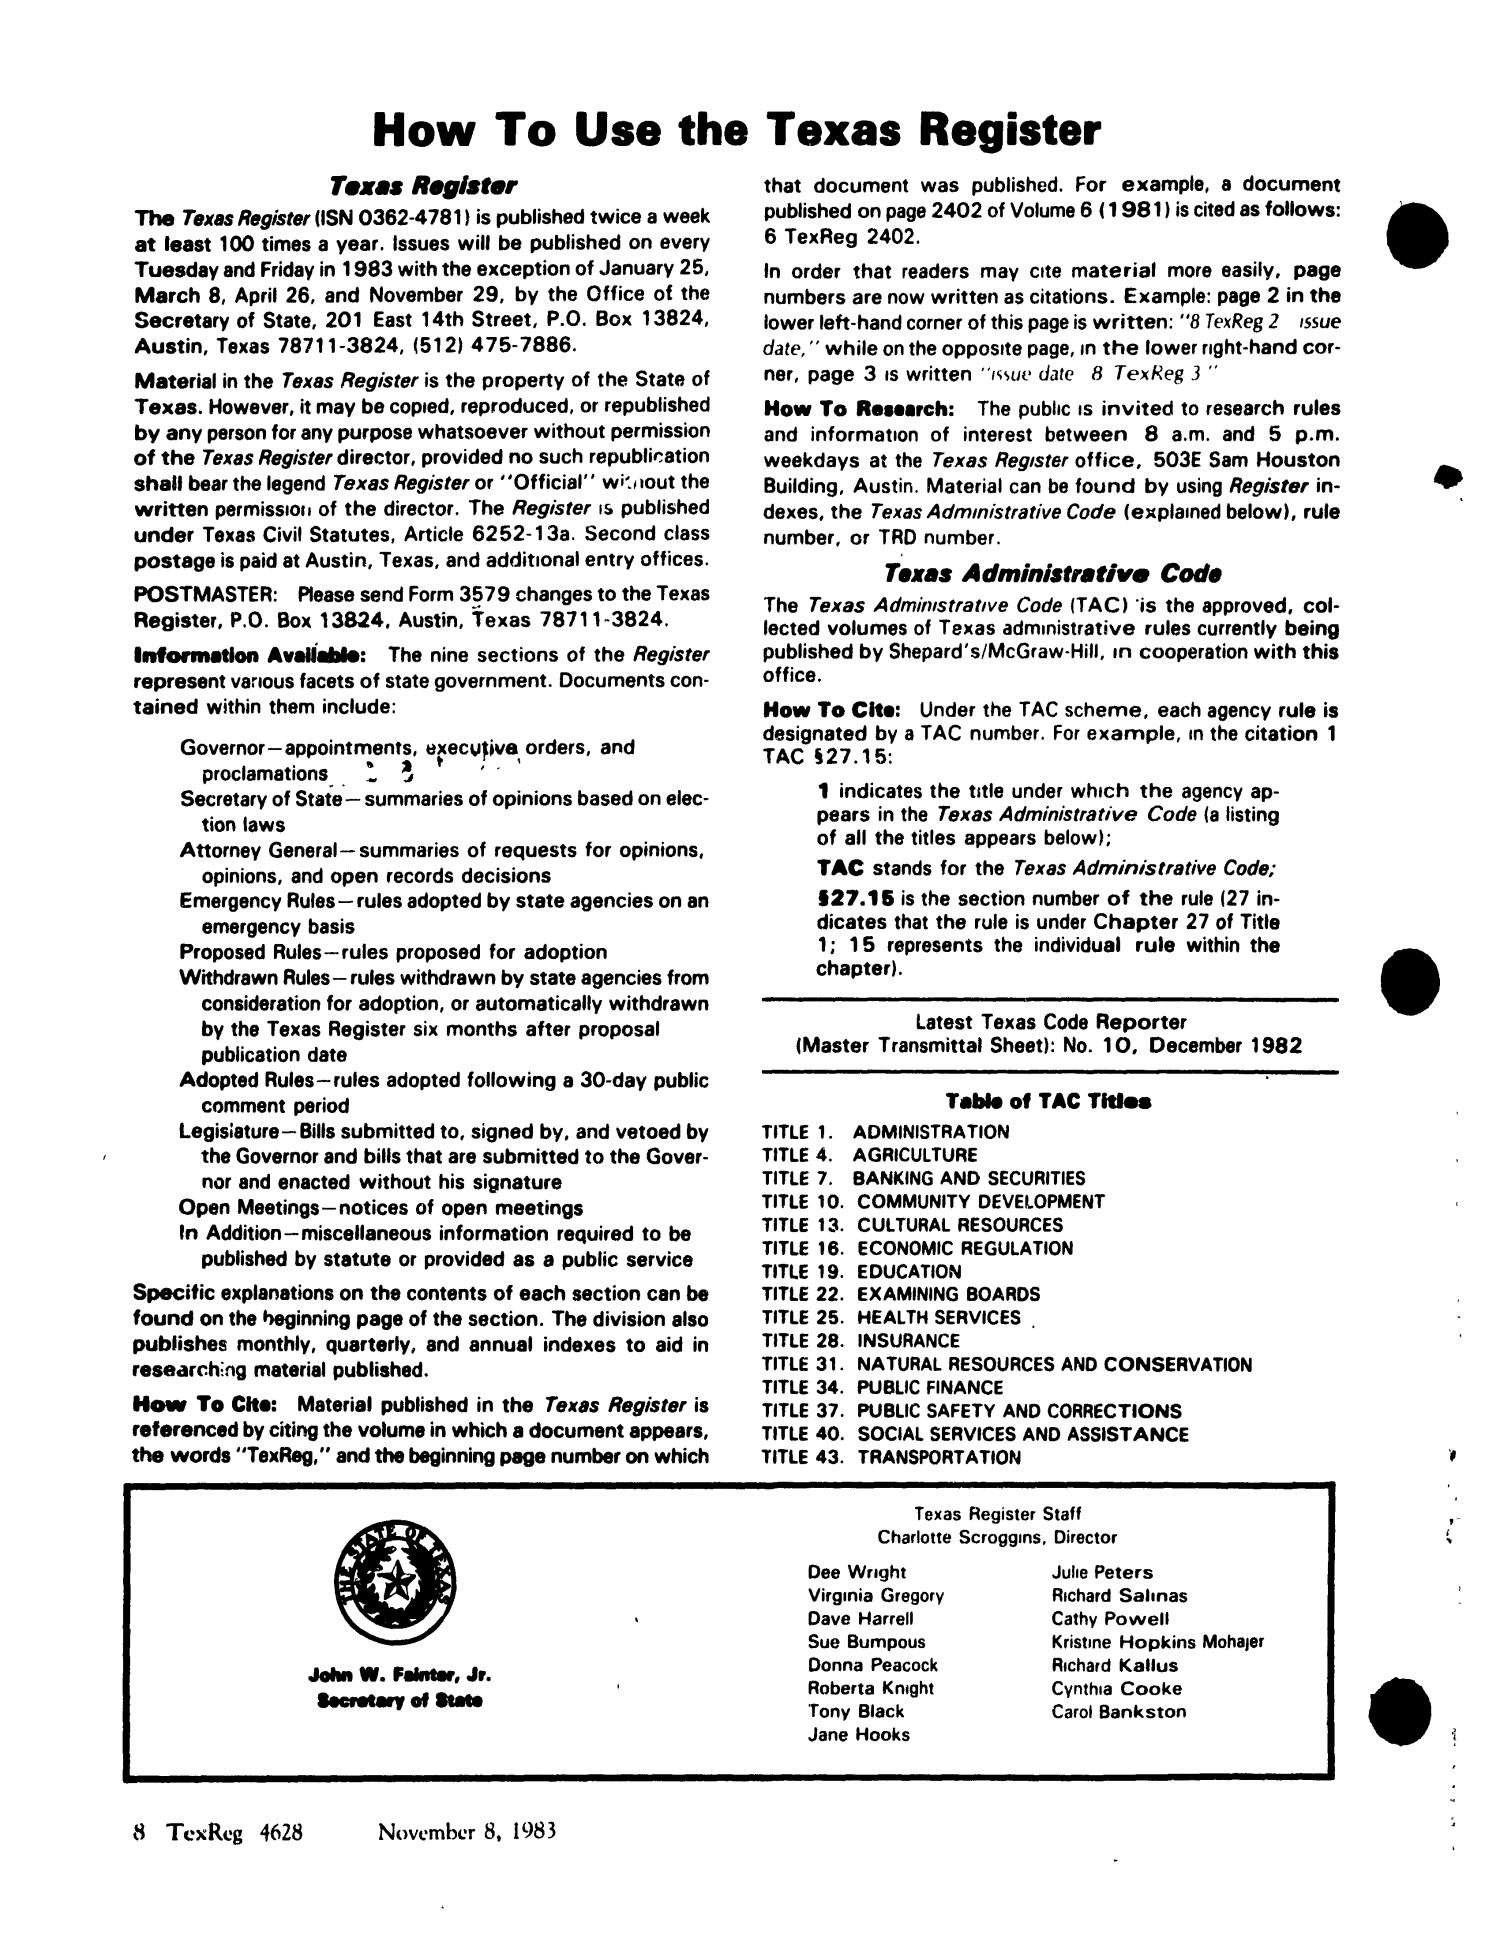 Texas Register, Volume 8, Number 82, Pages 4627-4698, November 8, 1983
                                                
                                                    4628
                                                